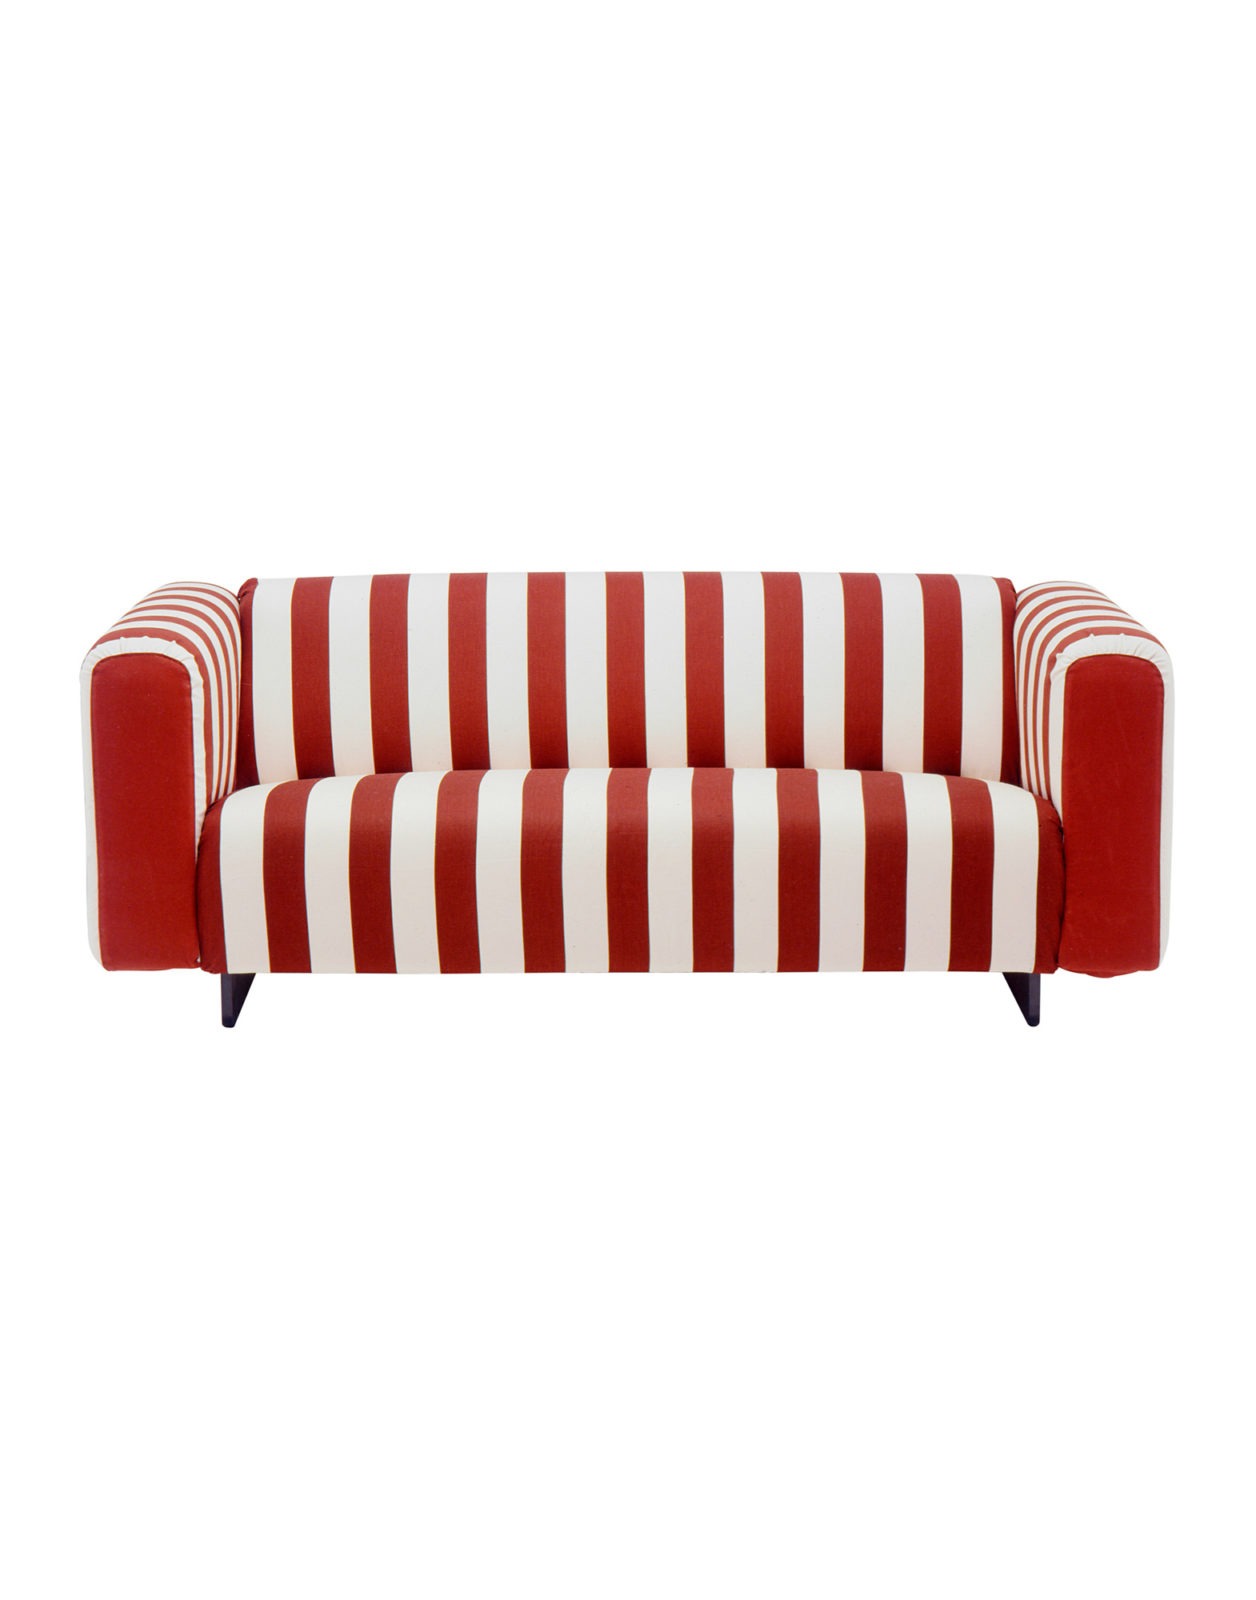 Schlichtes, rot-weiß gestreiftes 3er-Sofa KLIPPAN mit abgerundeten Ecken.